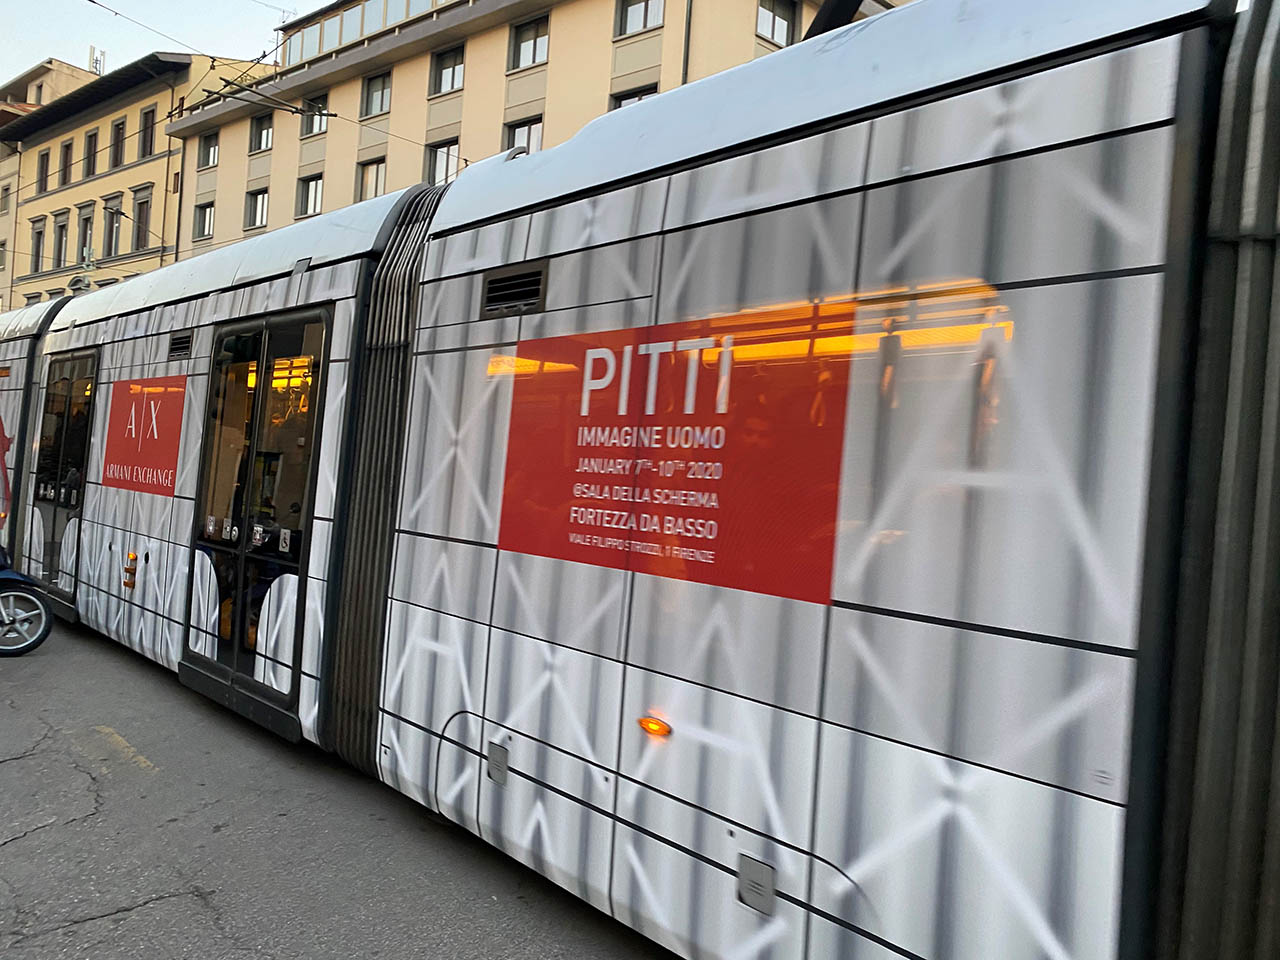 フィレンツェ市内には、ピッティのラッピングした列車も走っており、すごく盛り上がっている印象を受けました。